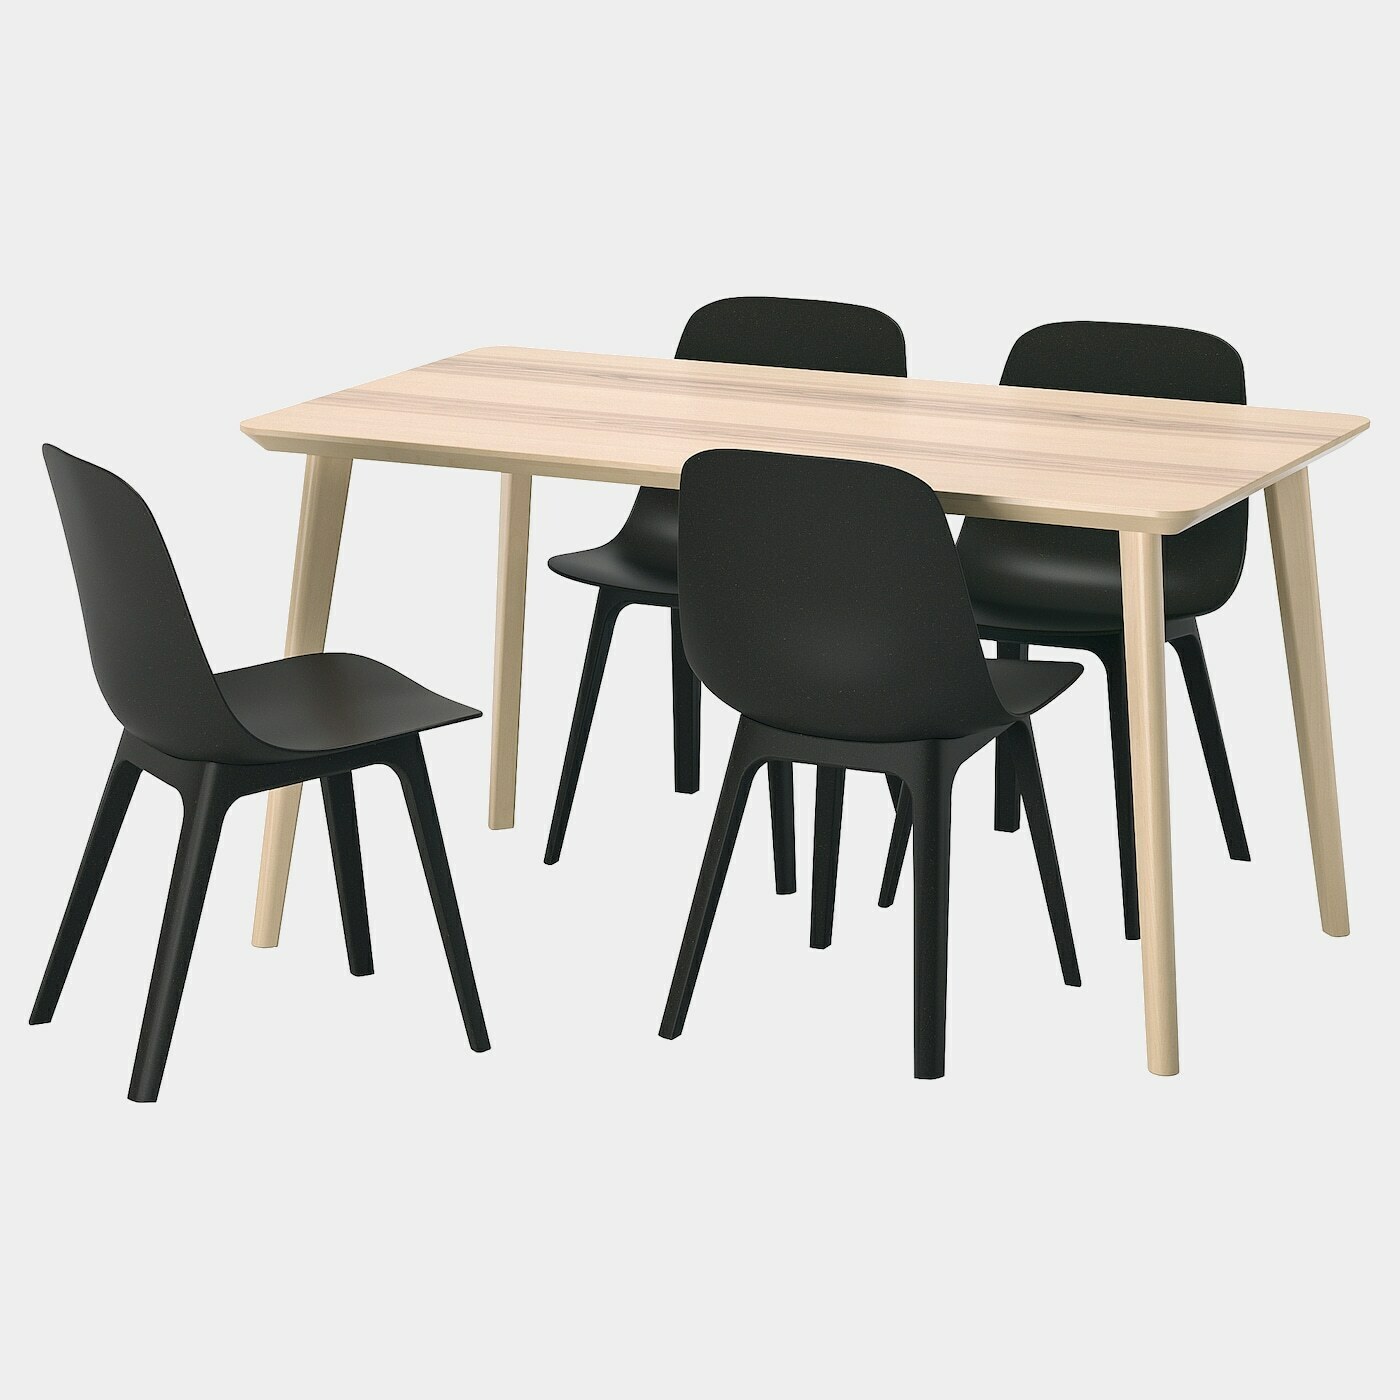 LISABO / ODGER Tisch und 4 Stühle  - Essplatzgruppe - Möbel Ideen für dein Zuhause von Home Trends. Möbel Trends von Social Media Influencer für dein Skandi Zuhause.